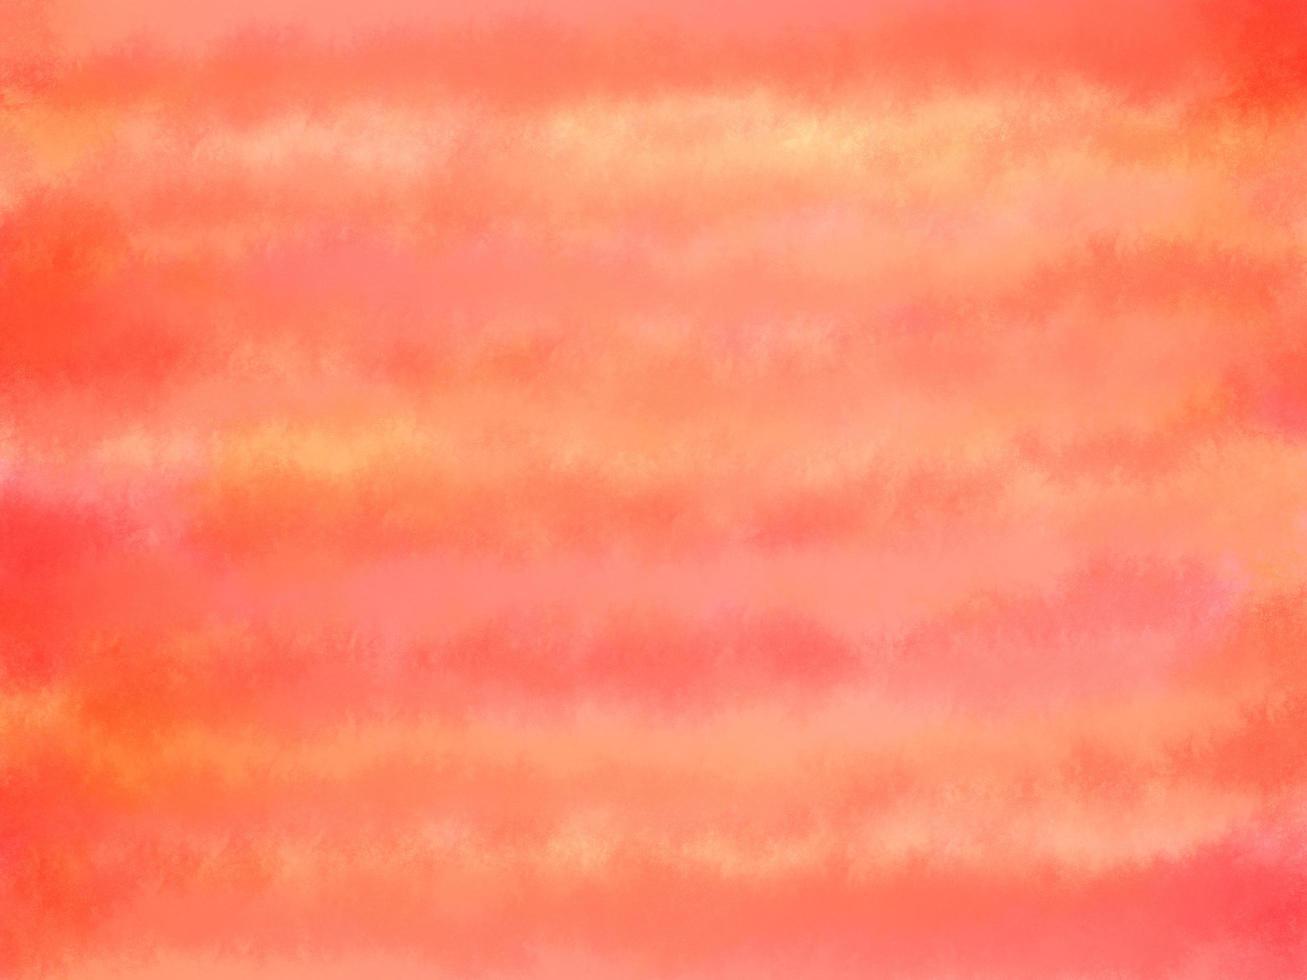 water kleur gestempeld verspreid rood en yellor kleur op witte achtergrond door programma computer, abstracte kunst ruwe textuur artwork. hedendaagse kunst, monotoon artistiek papier canvas, ruimte voor frame foto